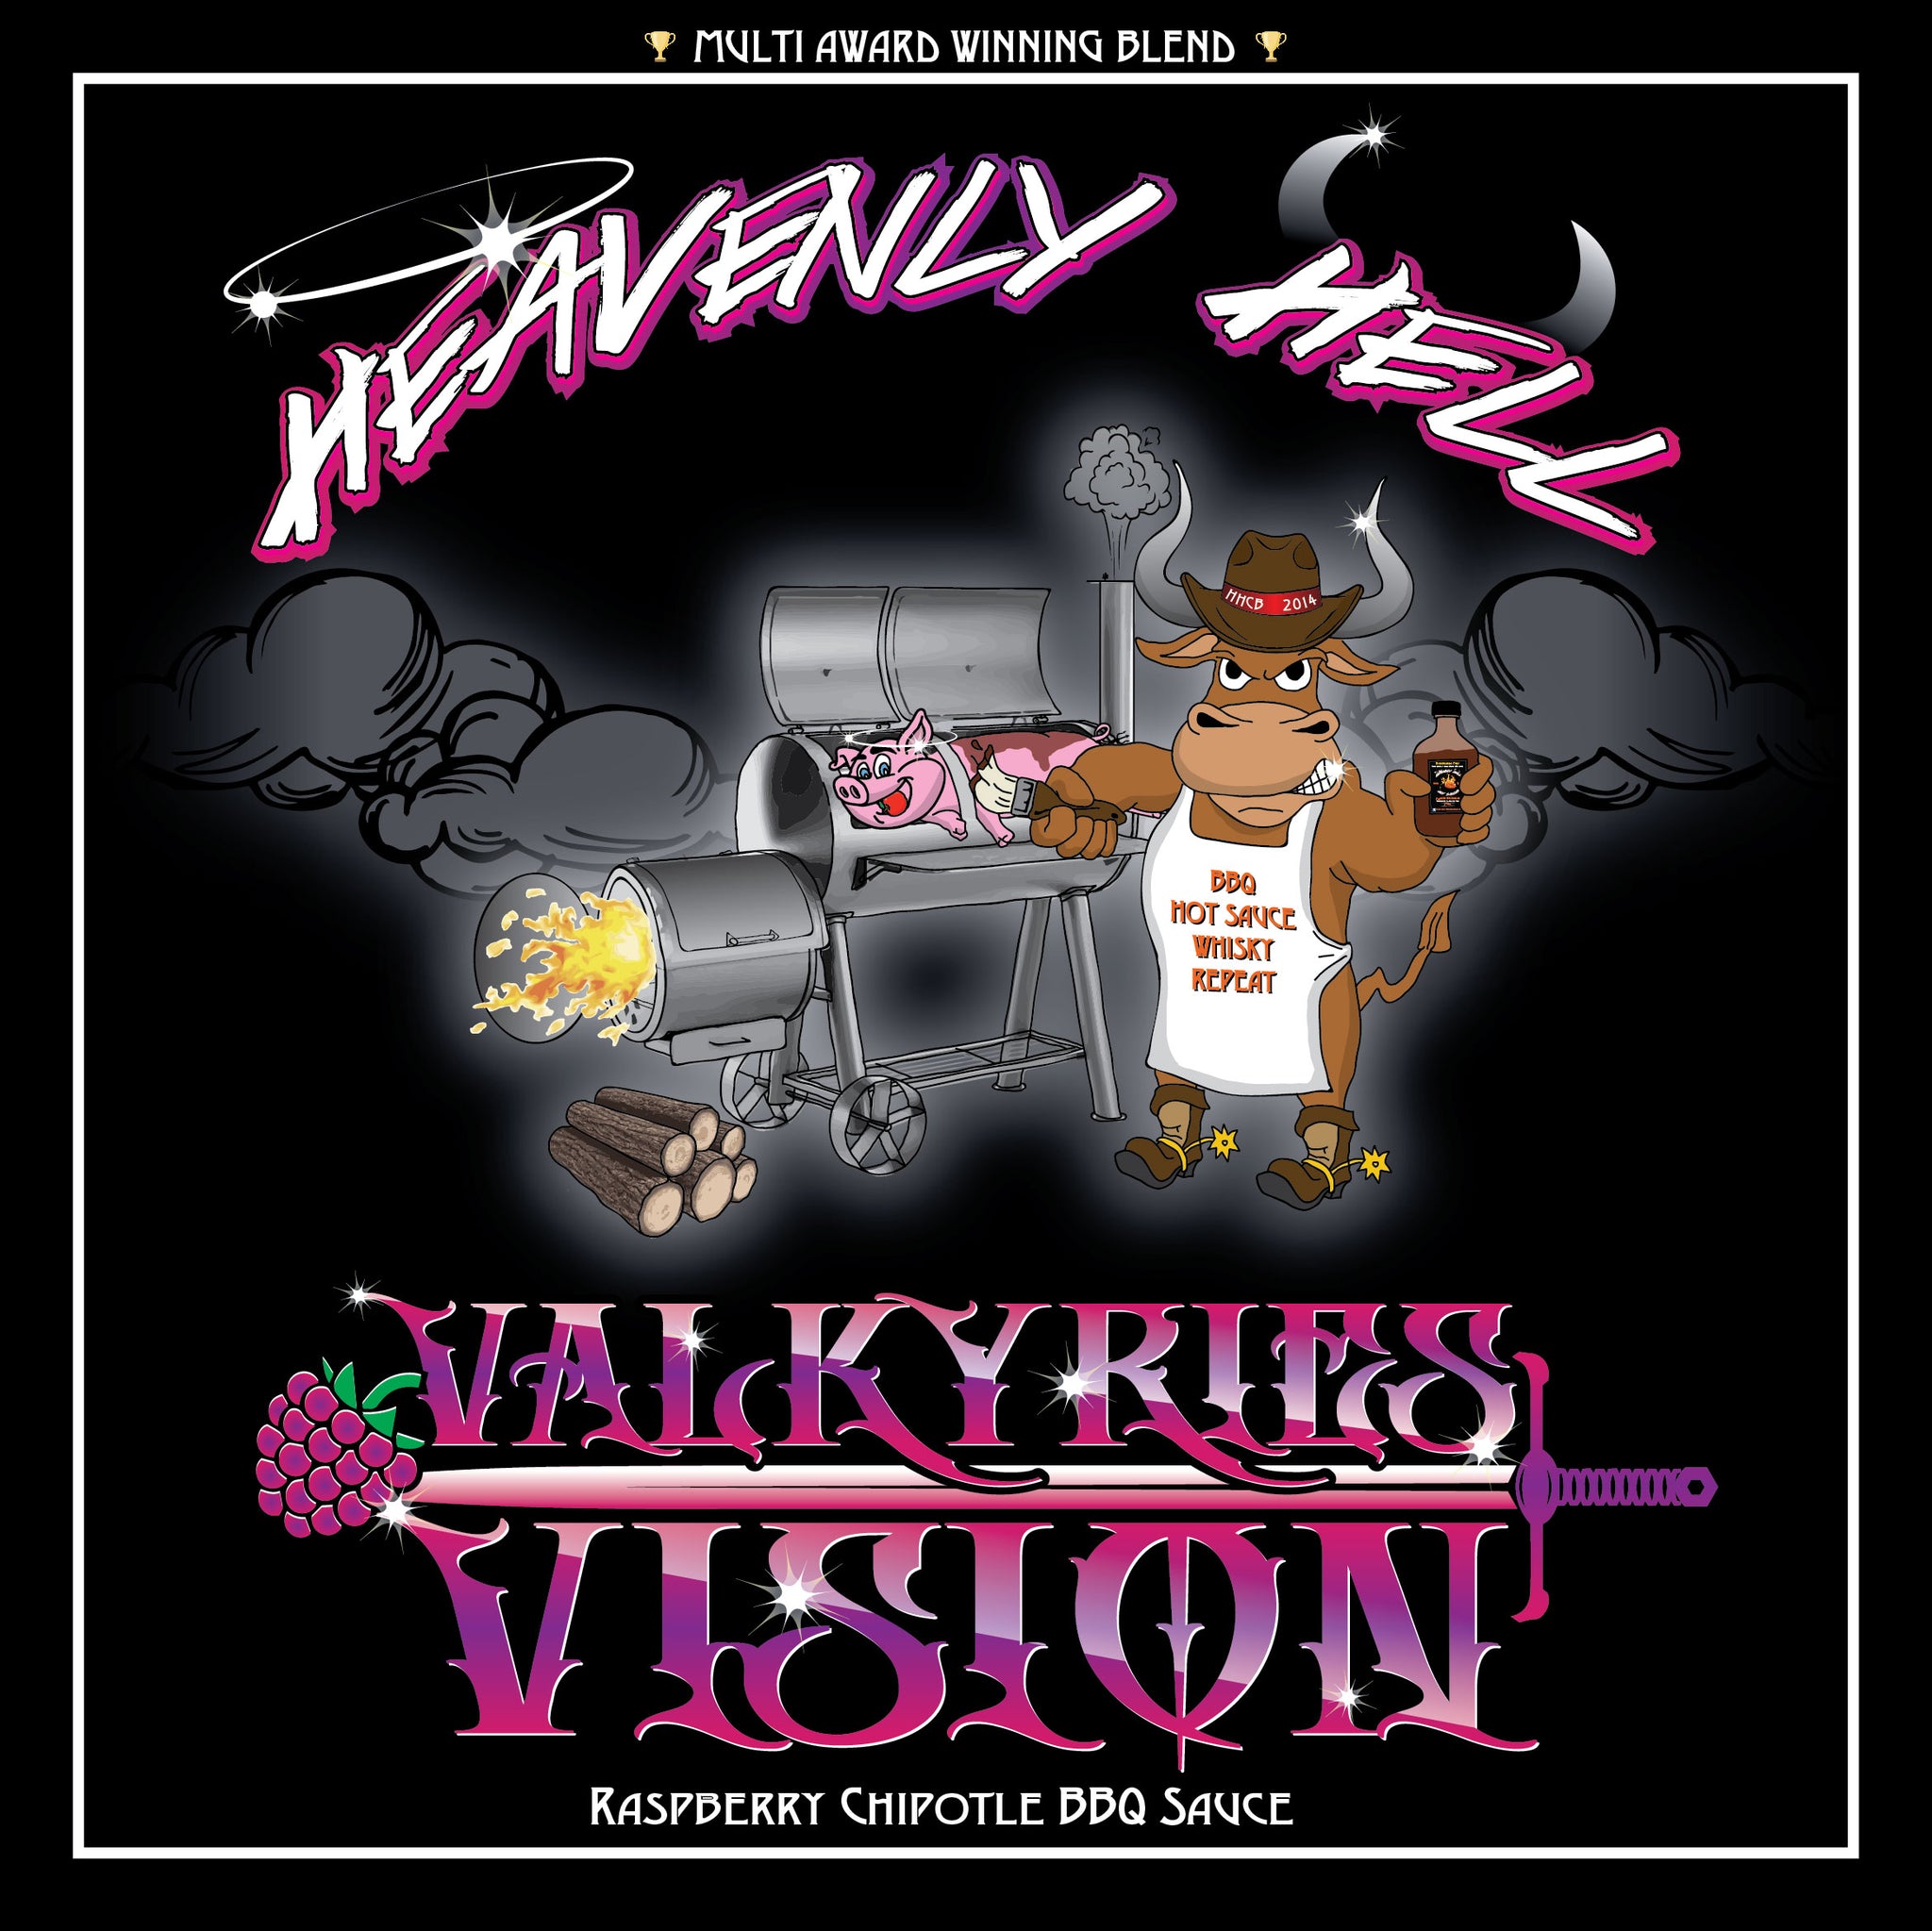 Valkyries Vision